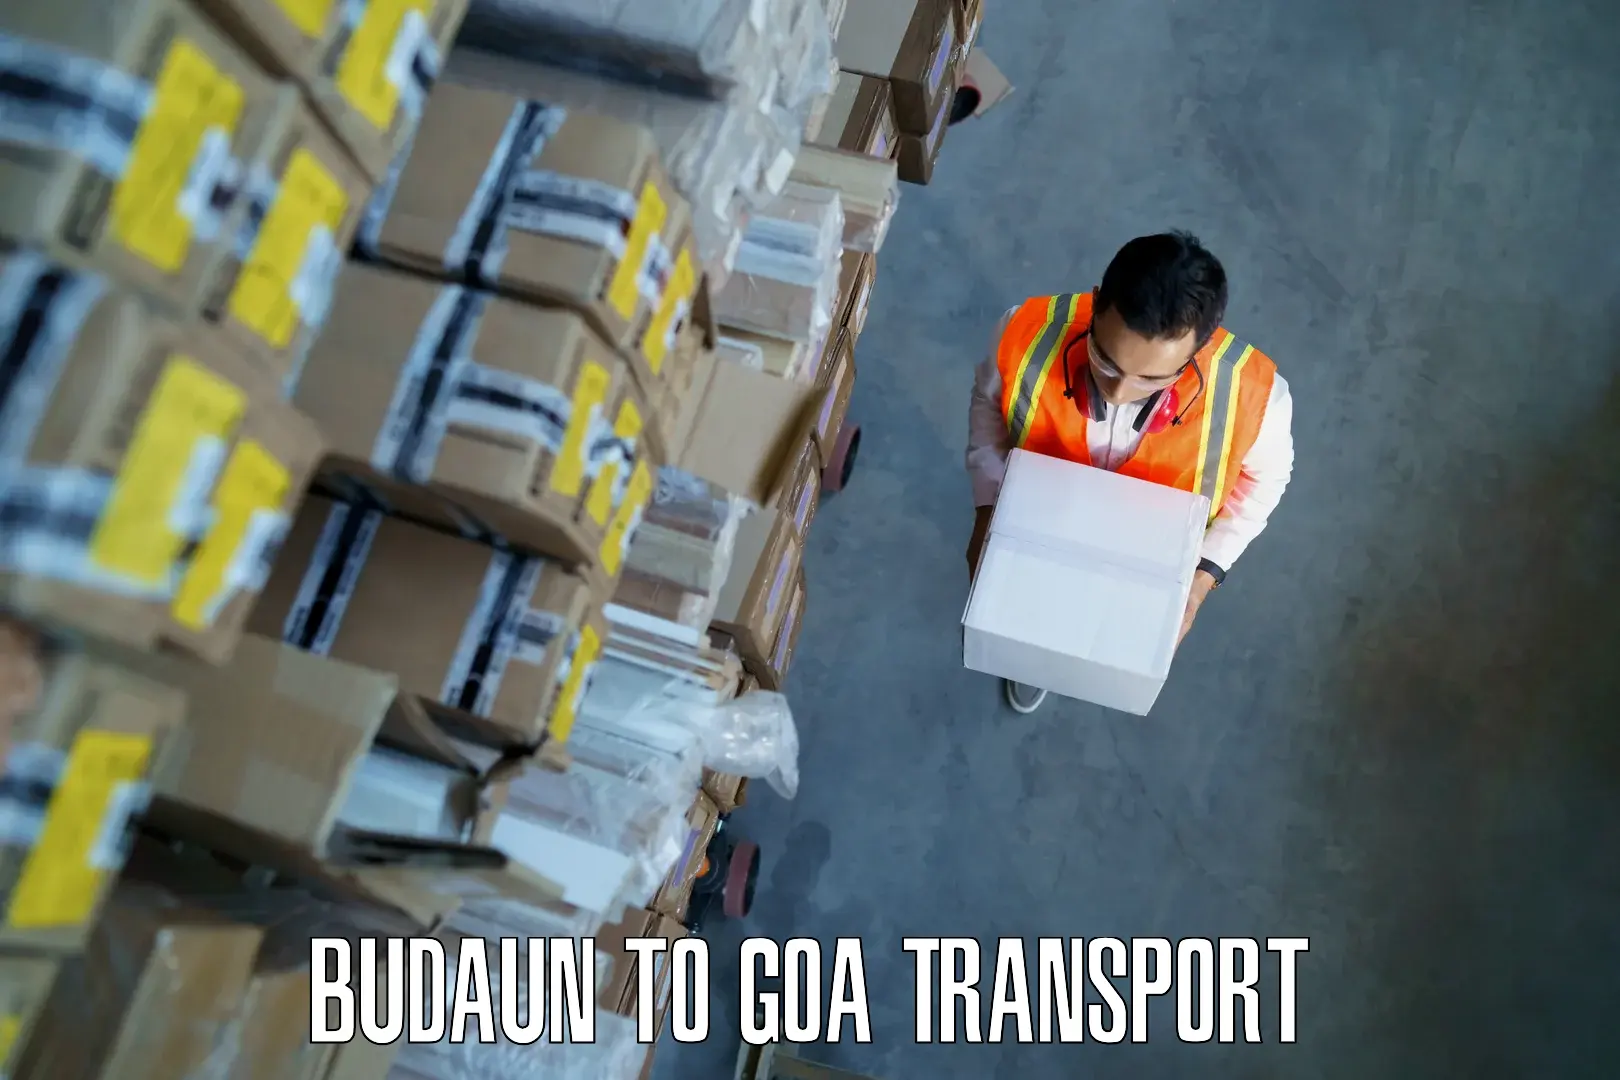 Transport in sharing in Budaun to Panjim